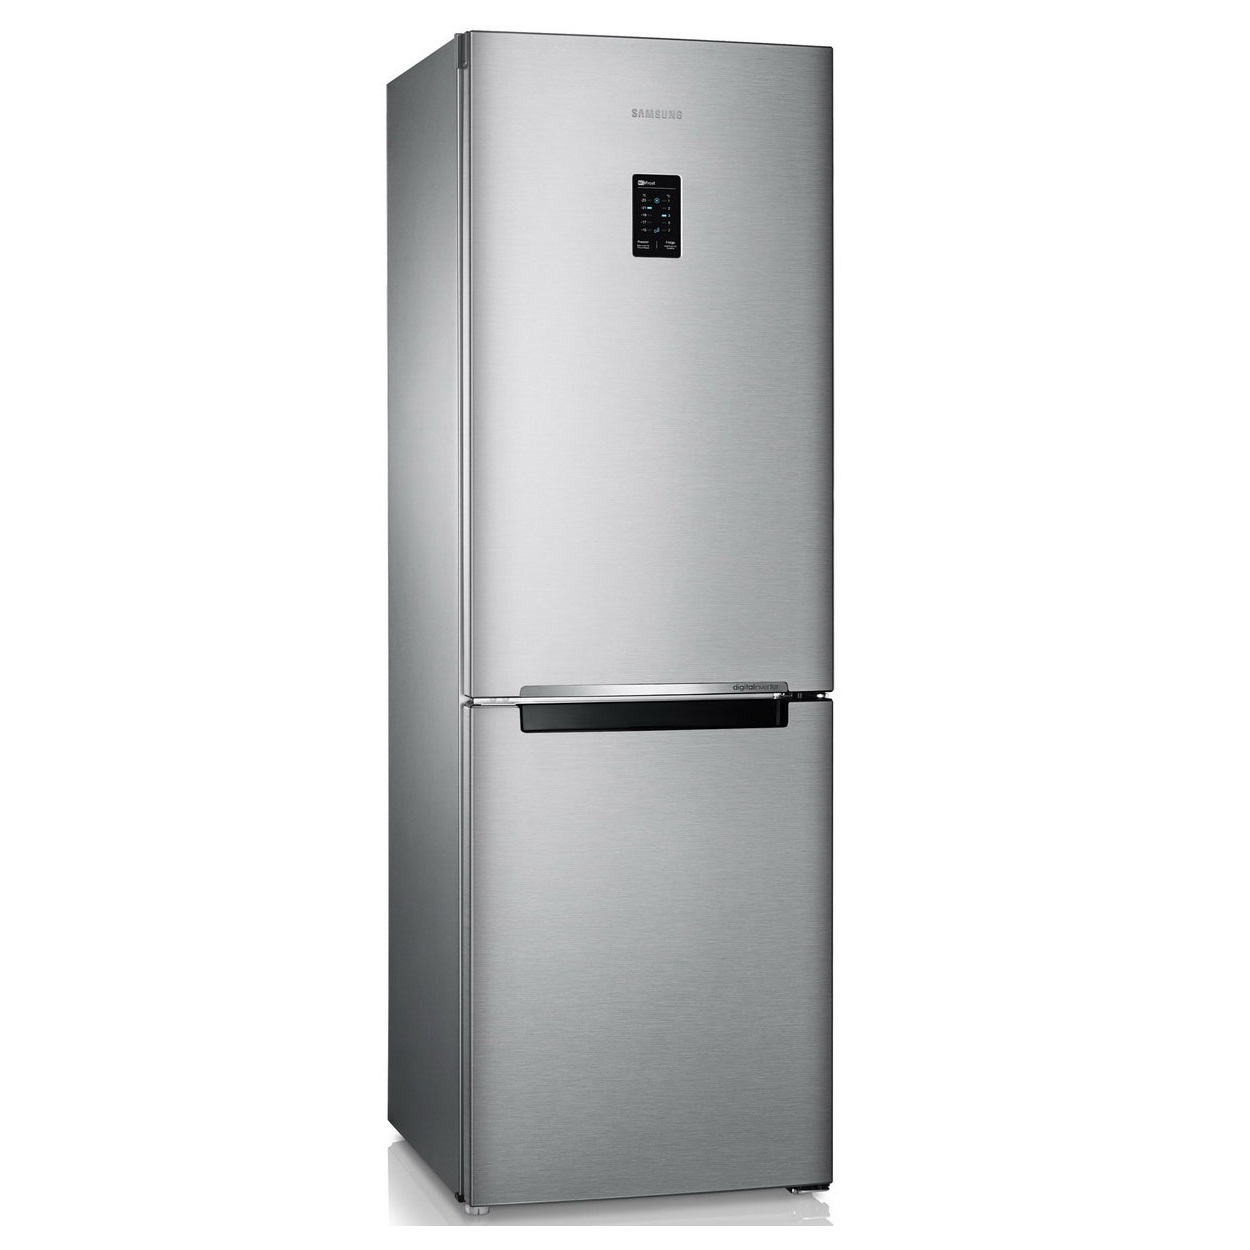 Холодильник Samsung RB29FERNDSA/WT серебристый